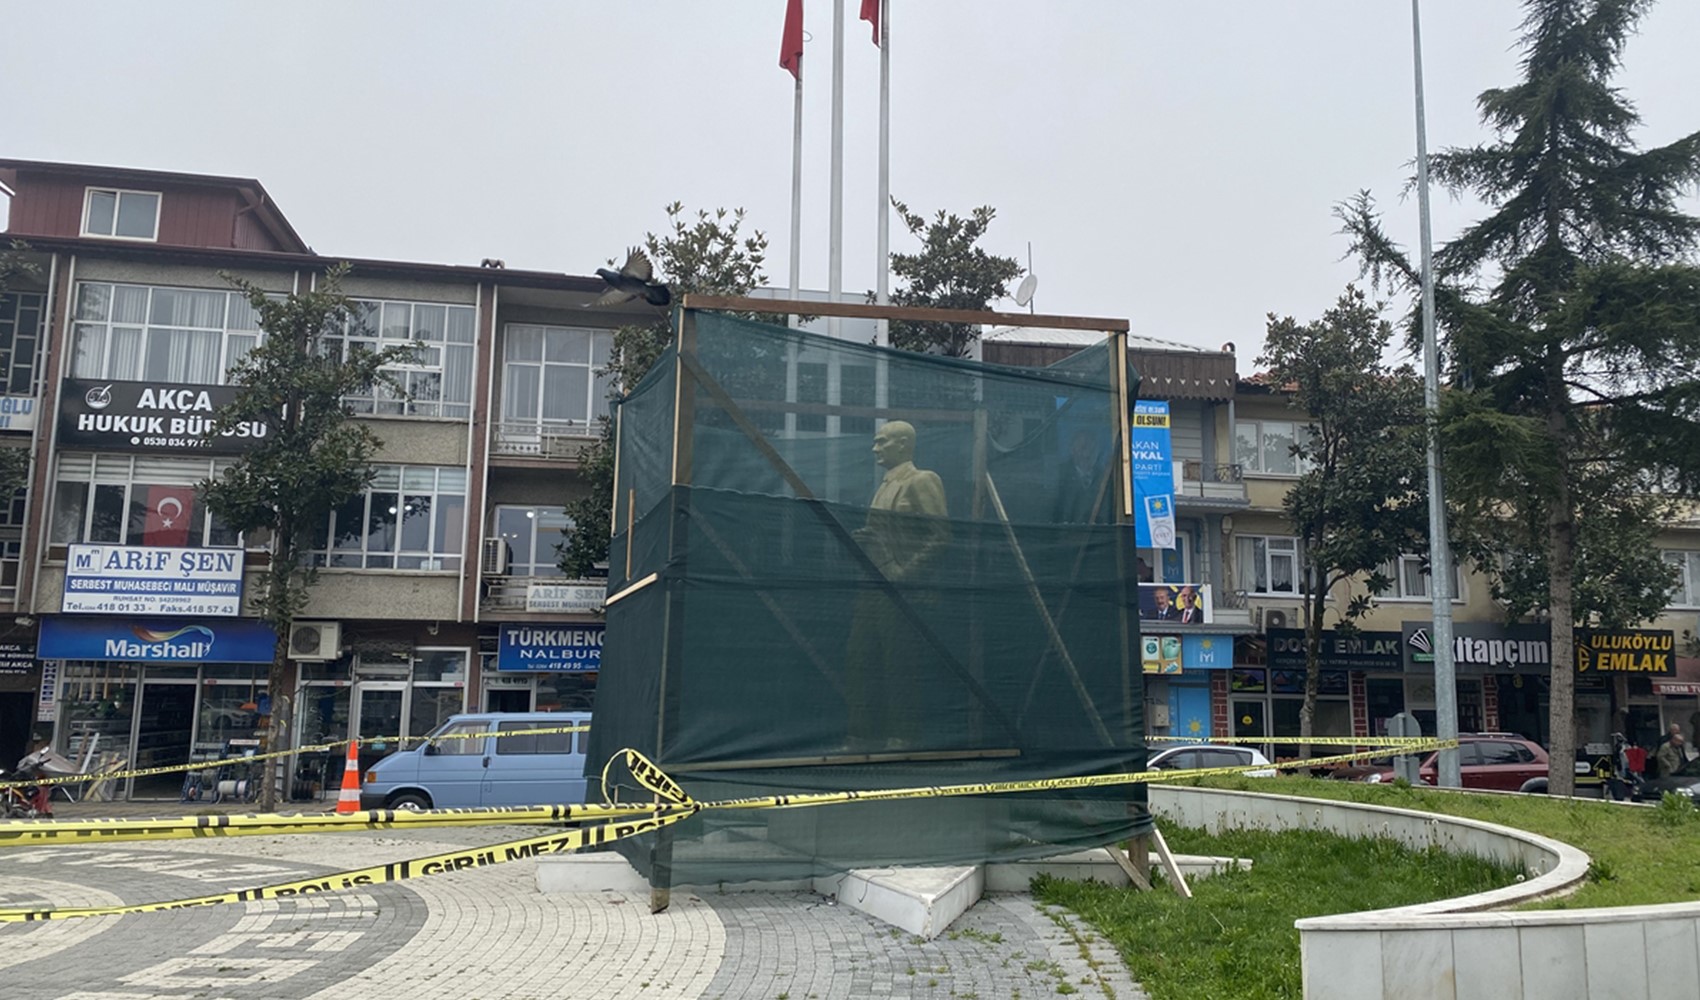 Sakarya'da Atatürk heykeline balyozla zarar veren zanlı tutuklandı